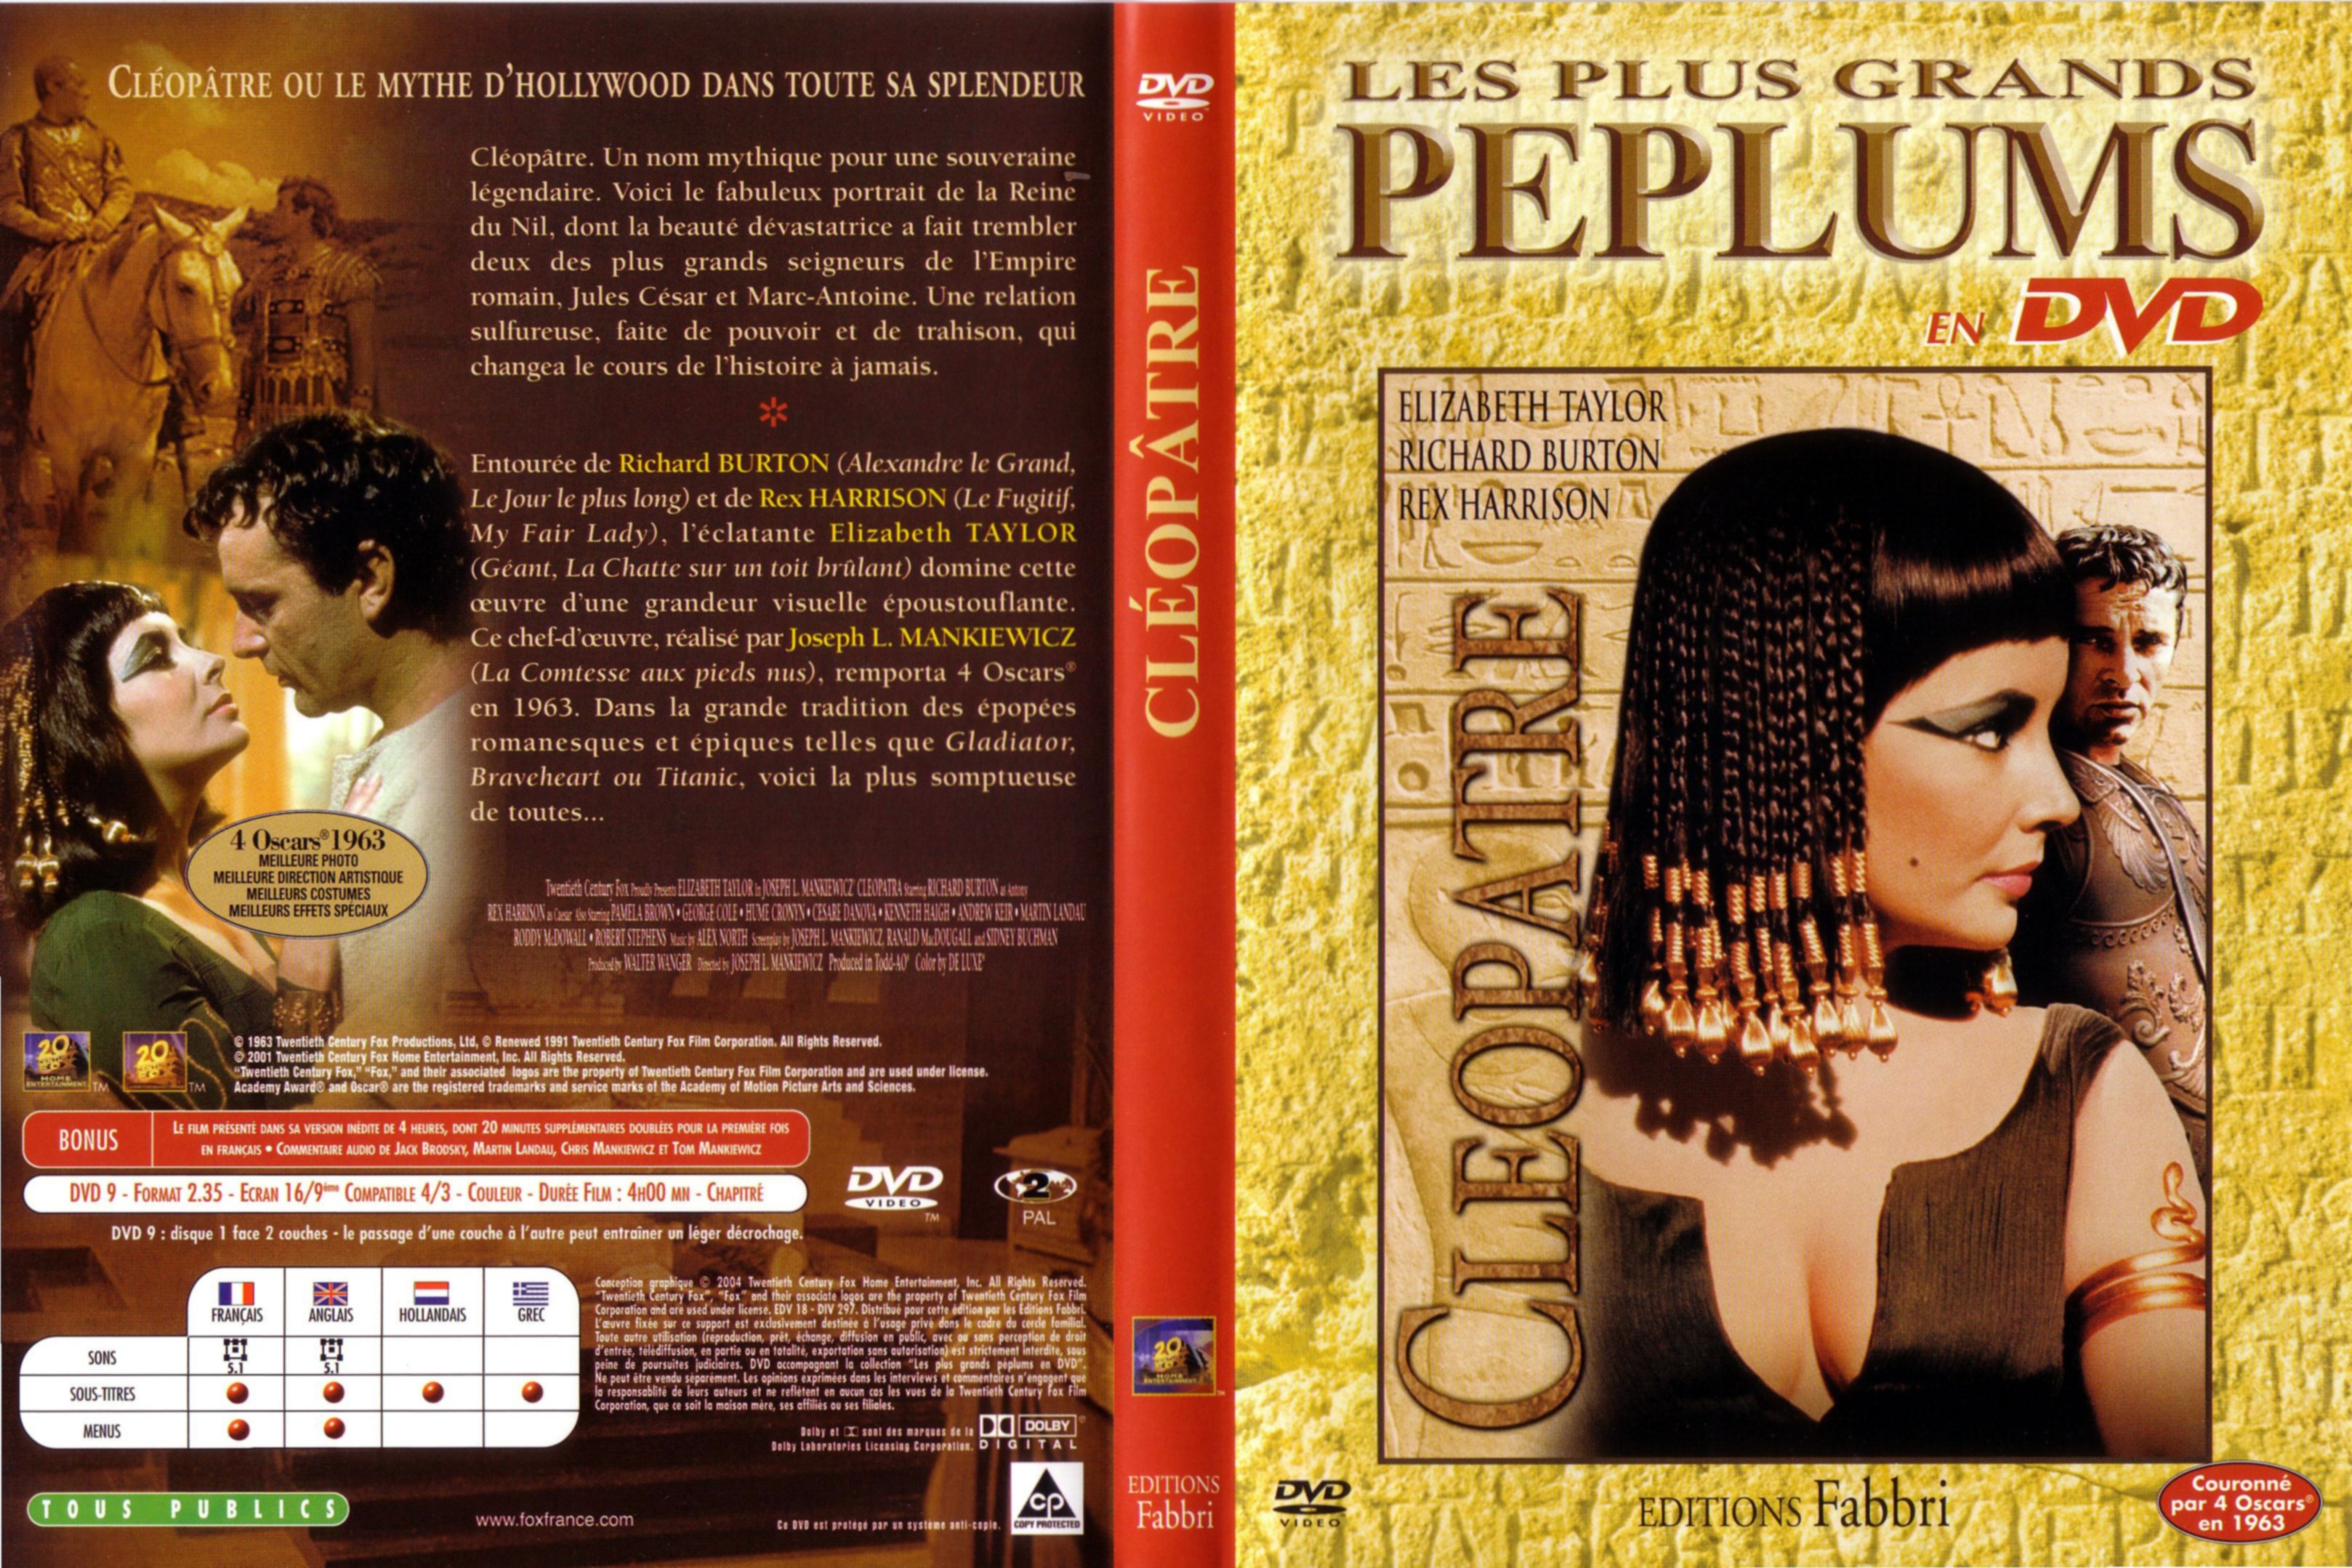 Jaquette DVD Cleopatre (1963)